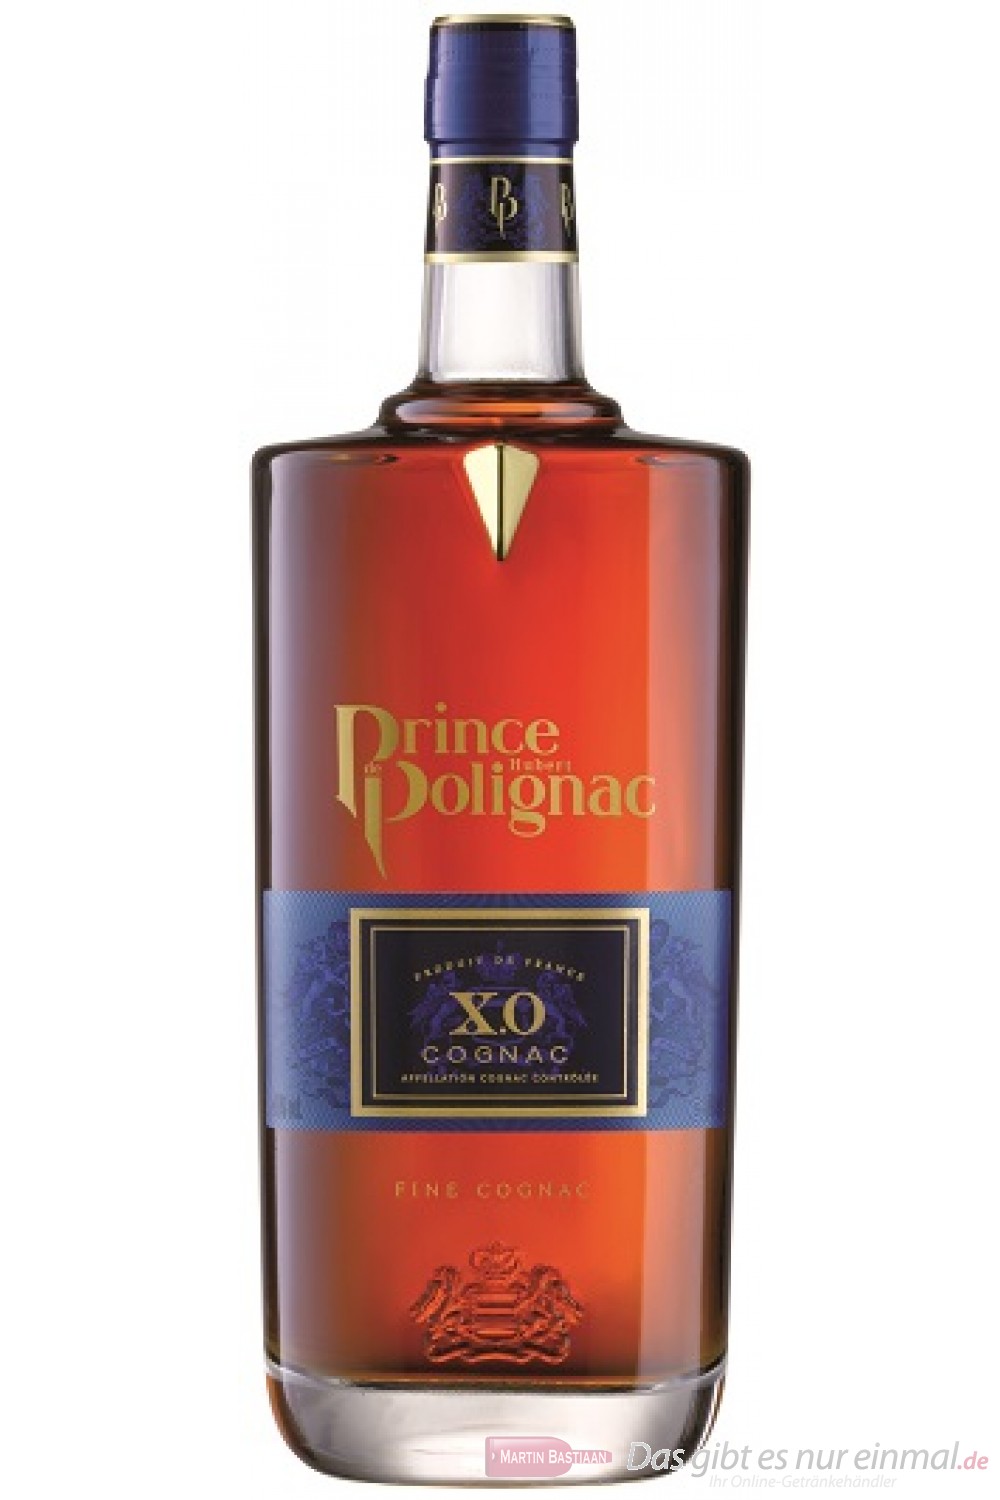 Polignac Cognac XO